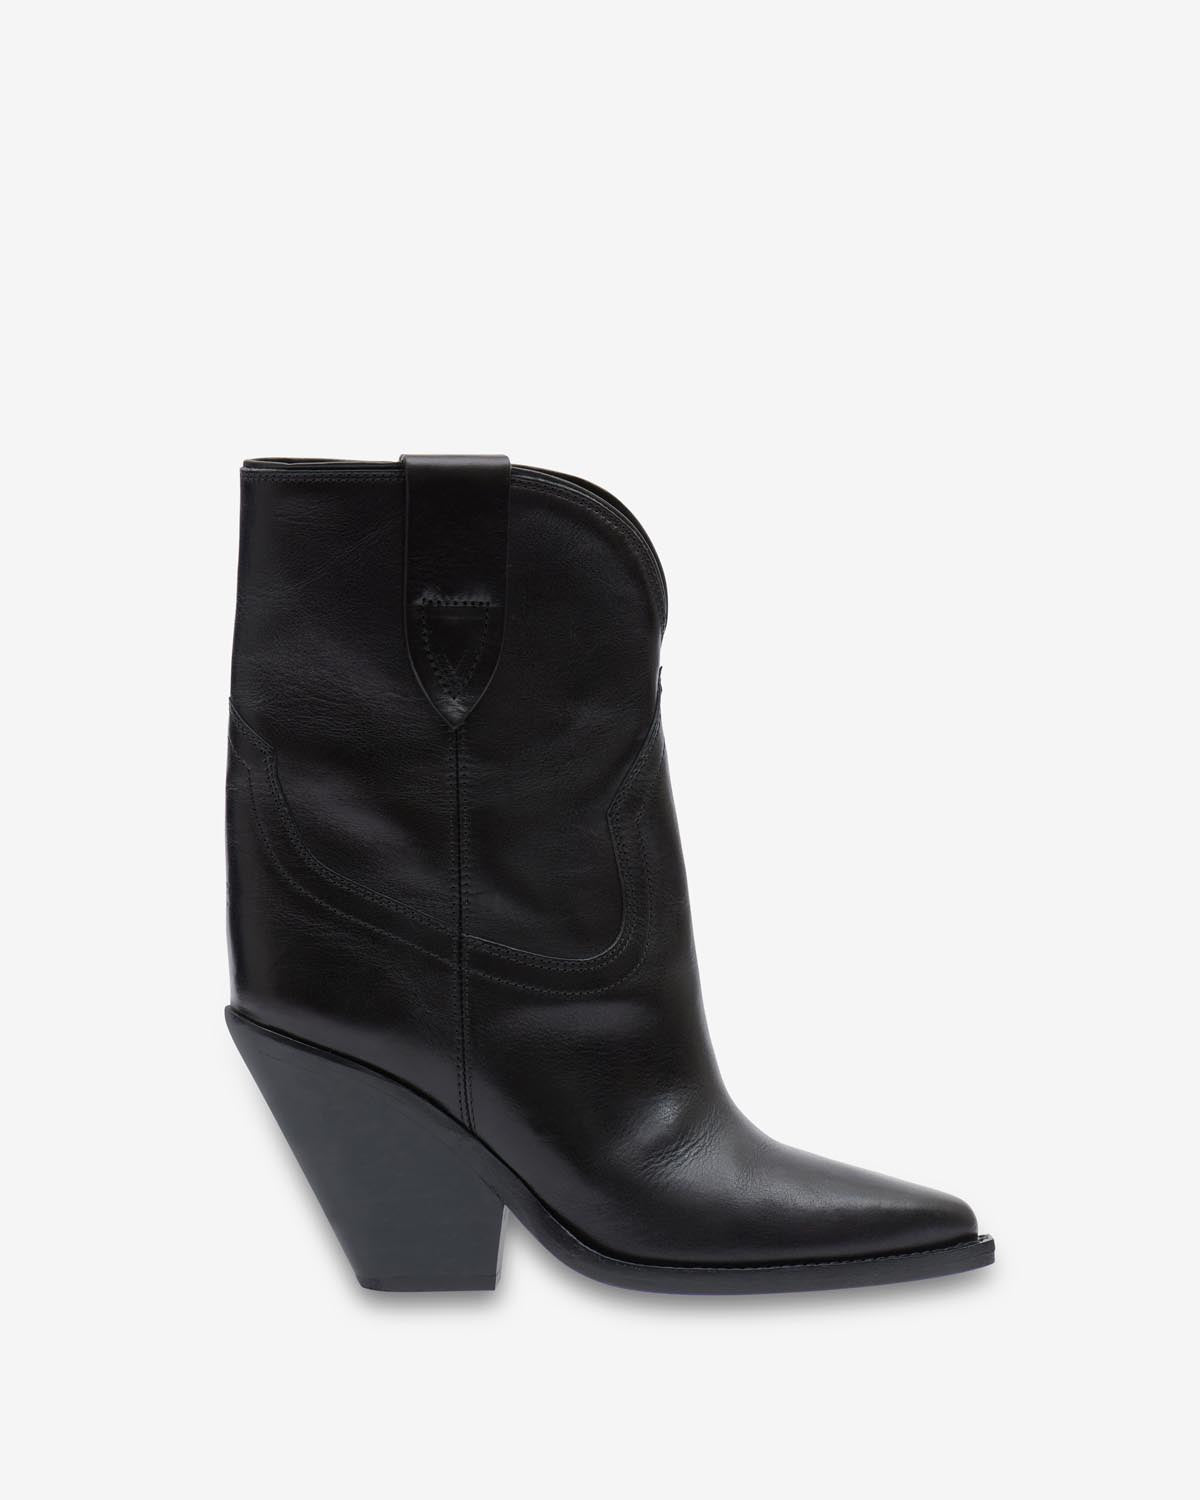 Boots leyane Woman Noir 1